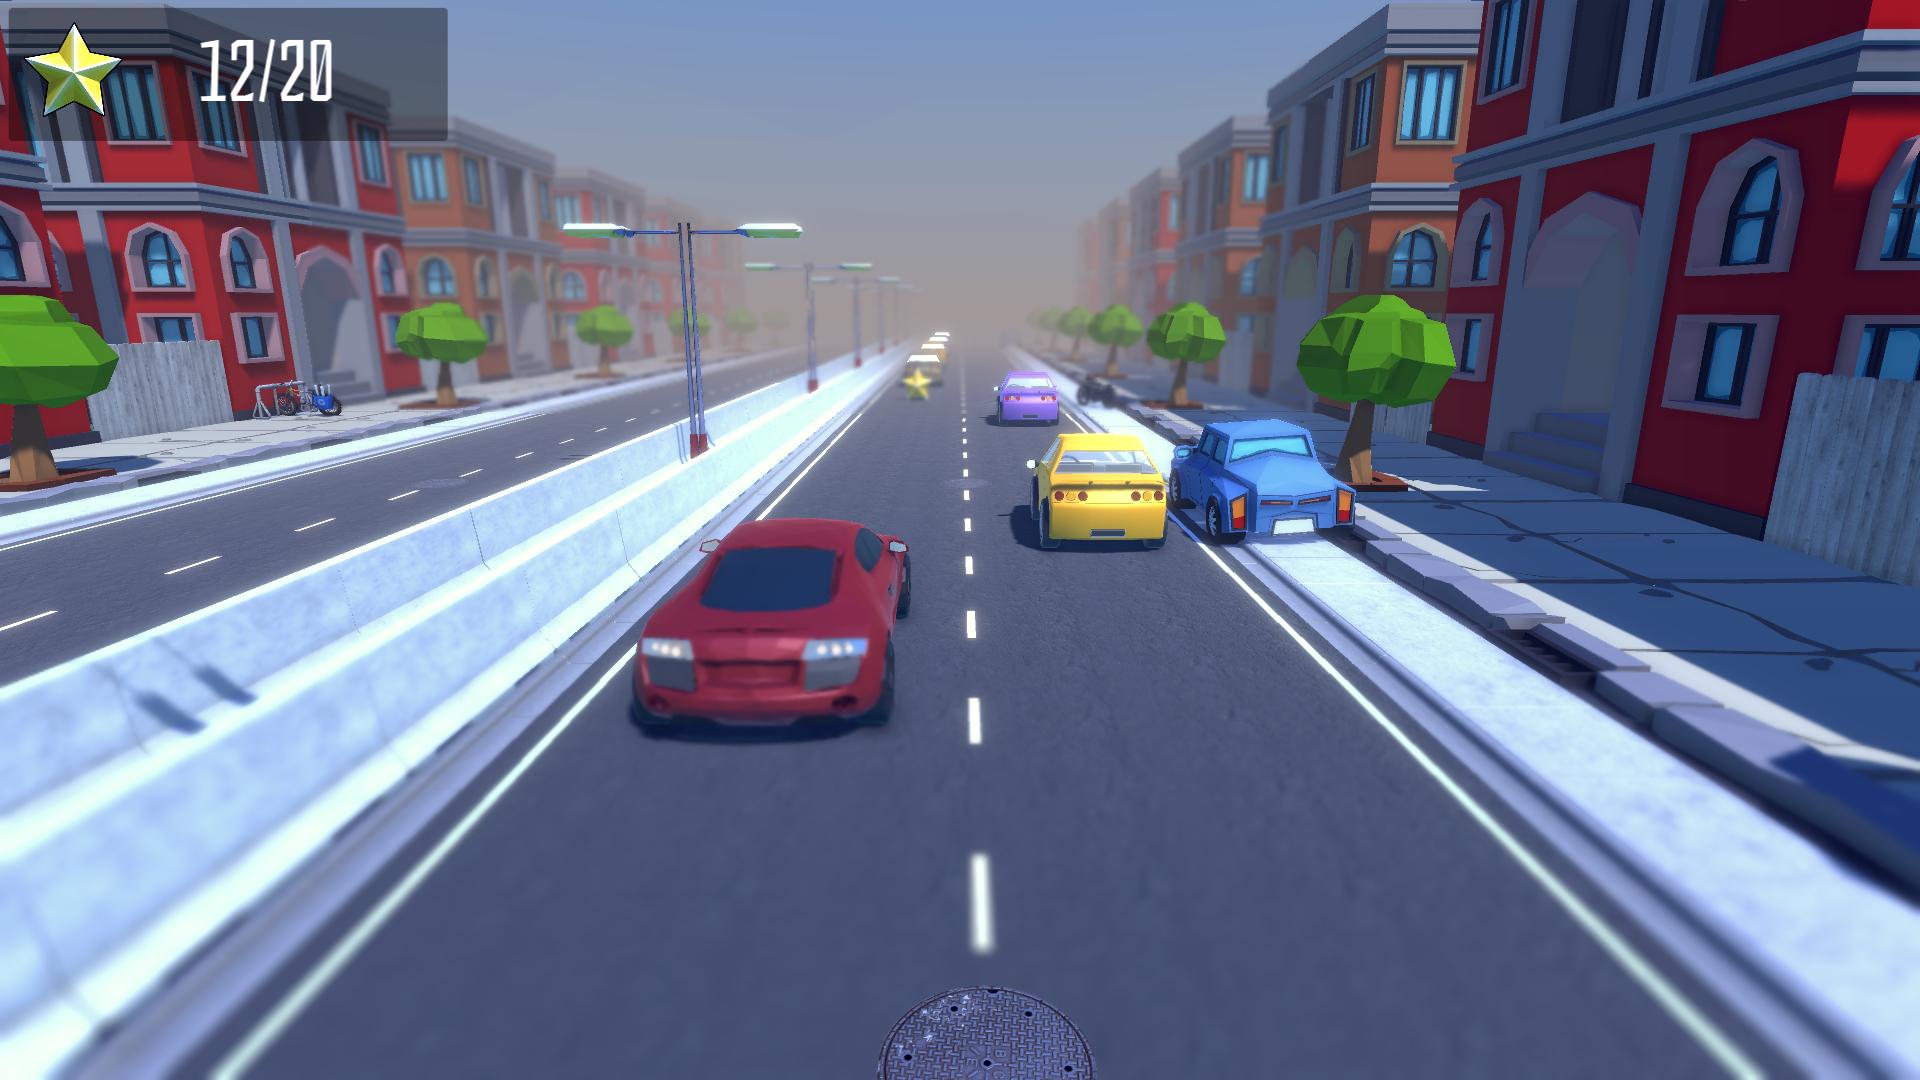 Highway of death screenshot